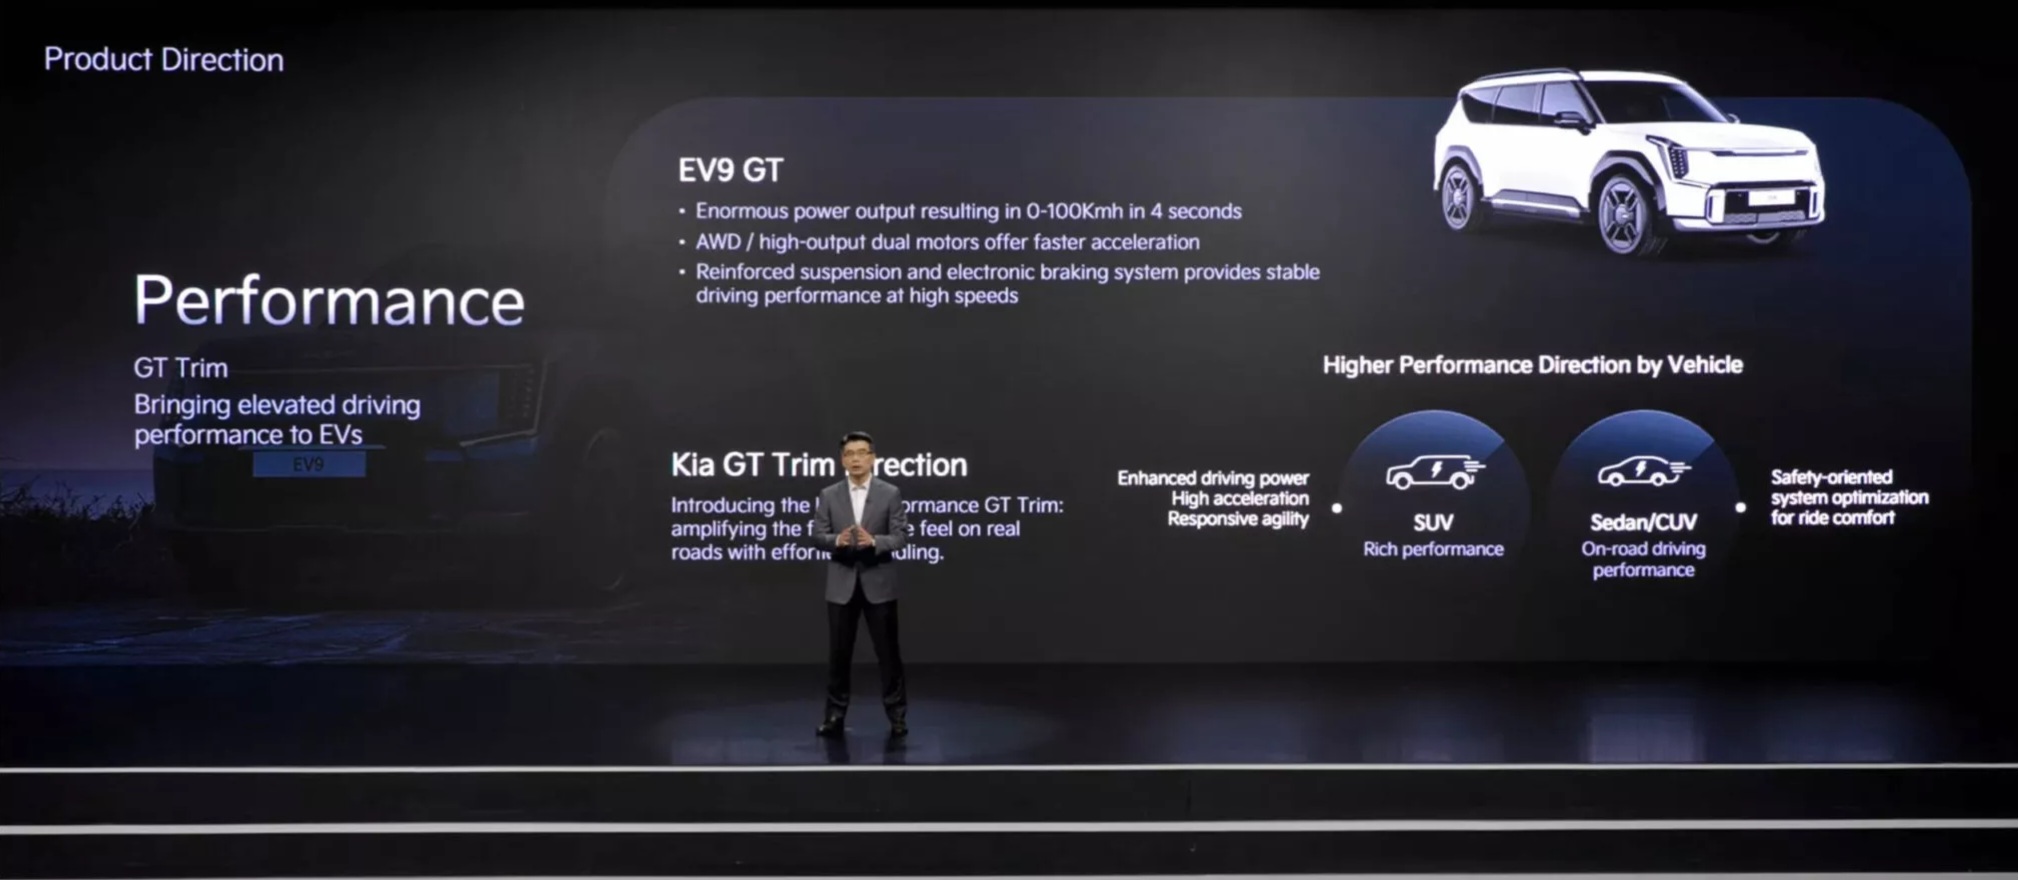 Kia EV9 GT is coming in January 2025